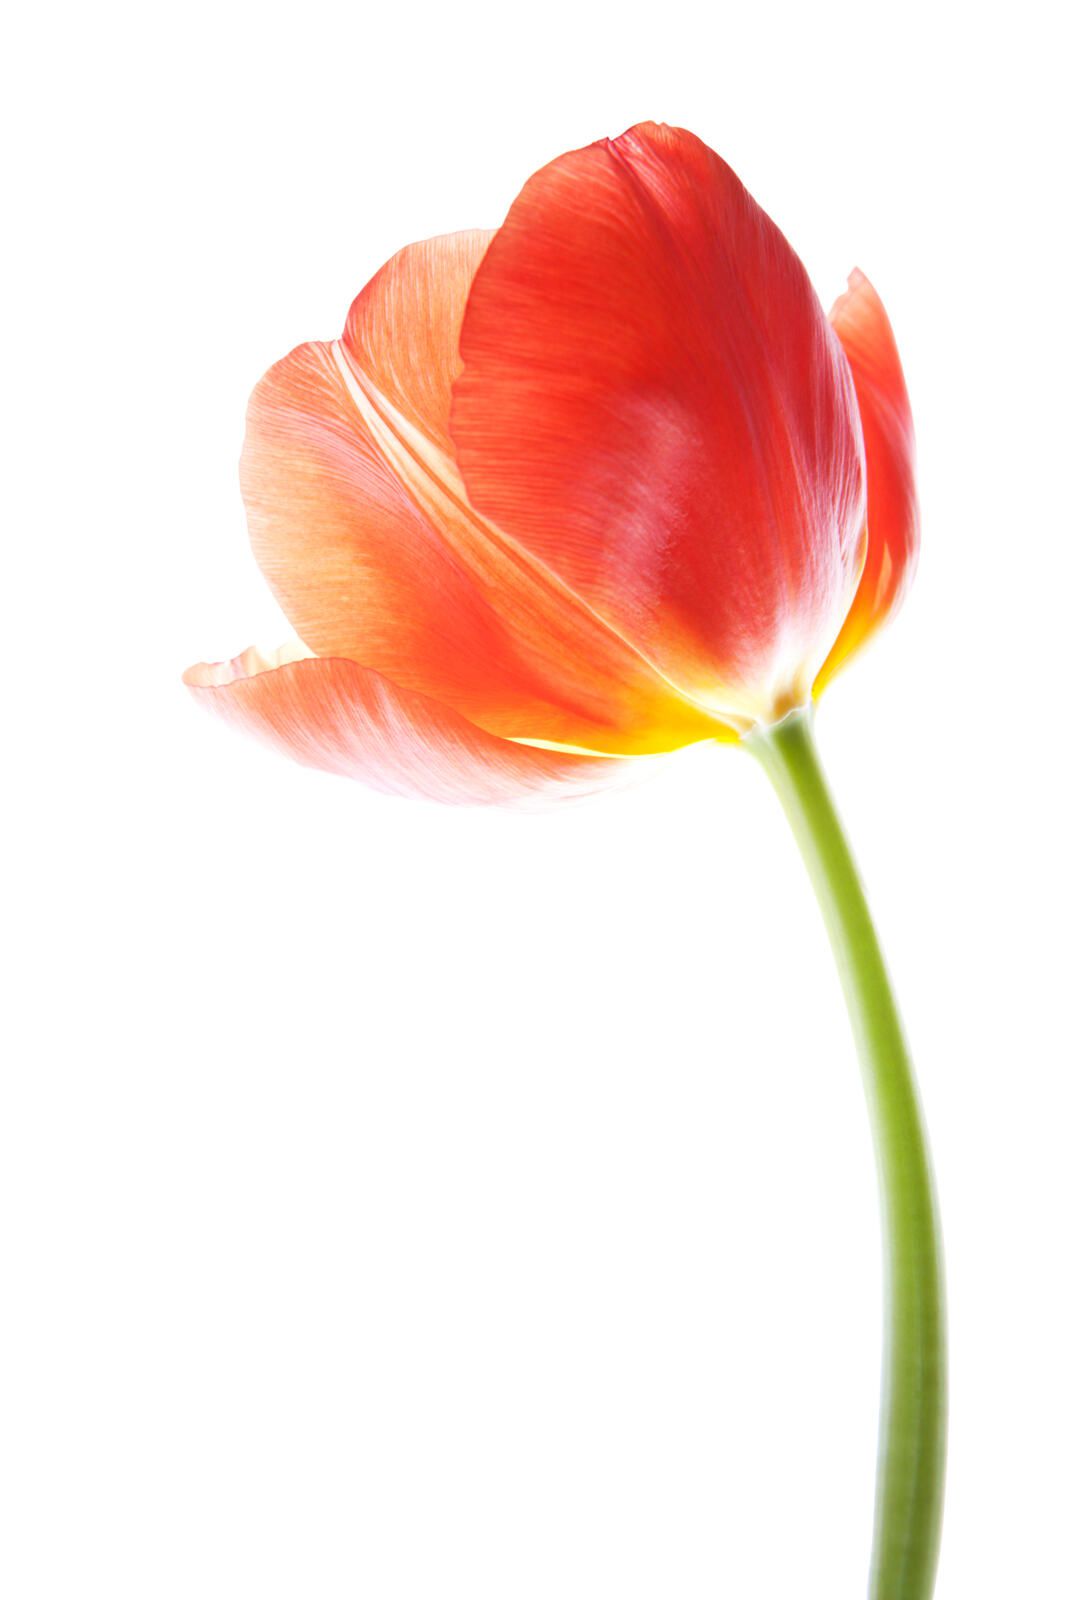 Tulips Flower Care Tips